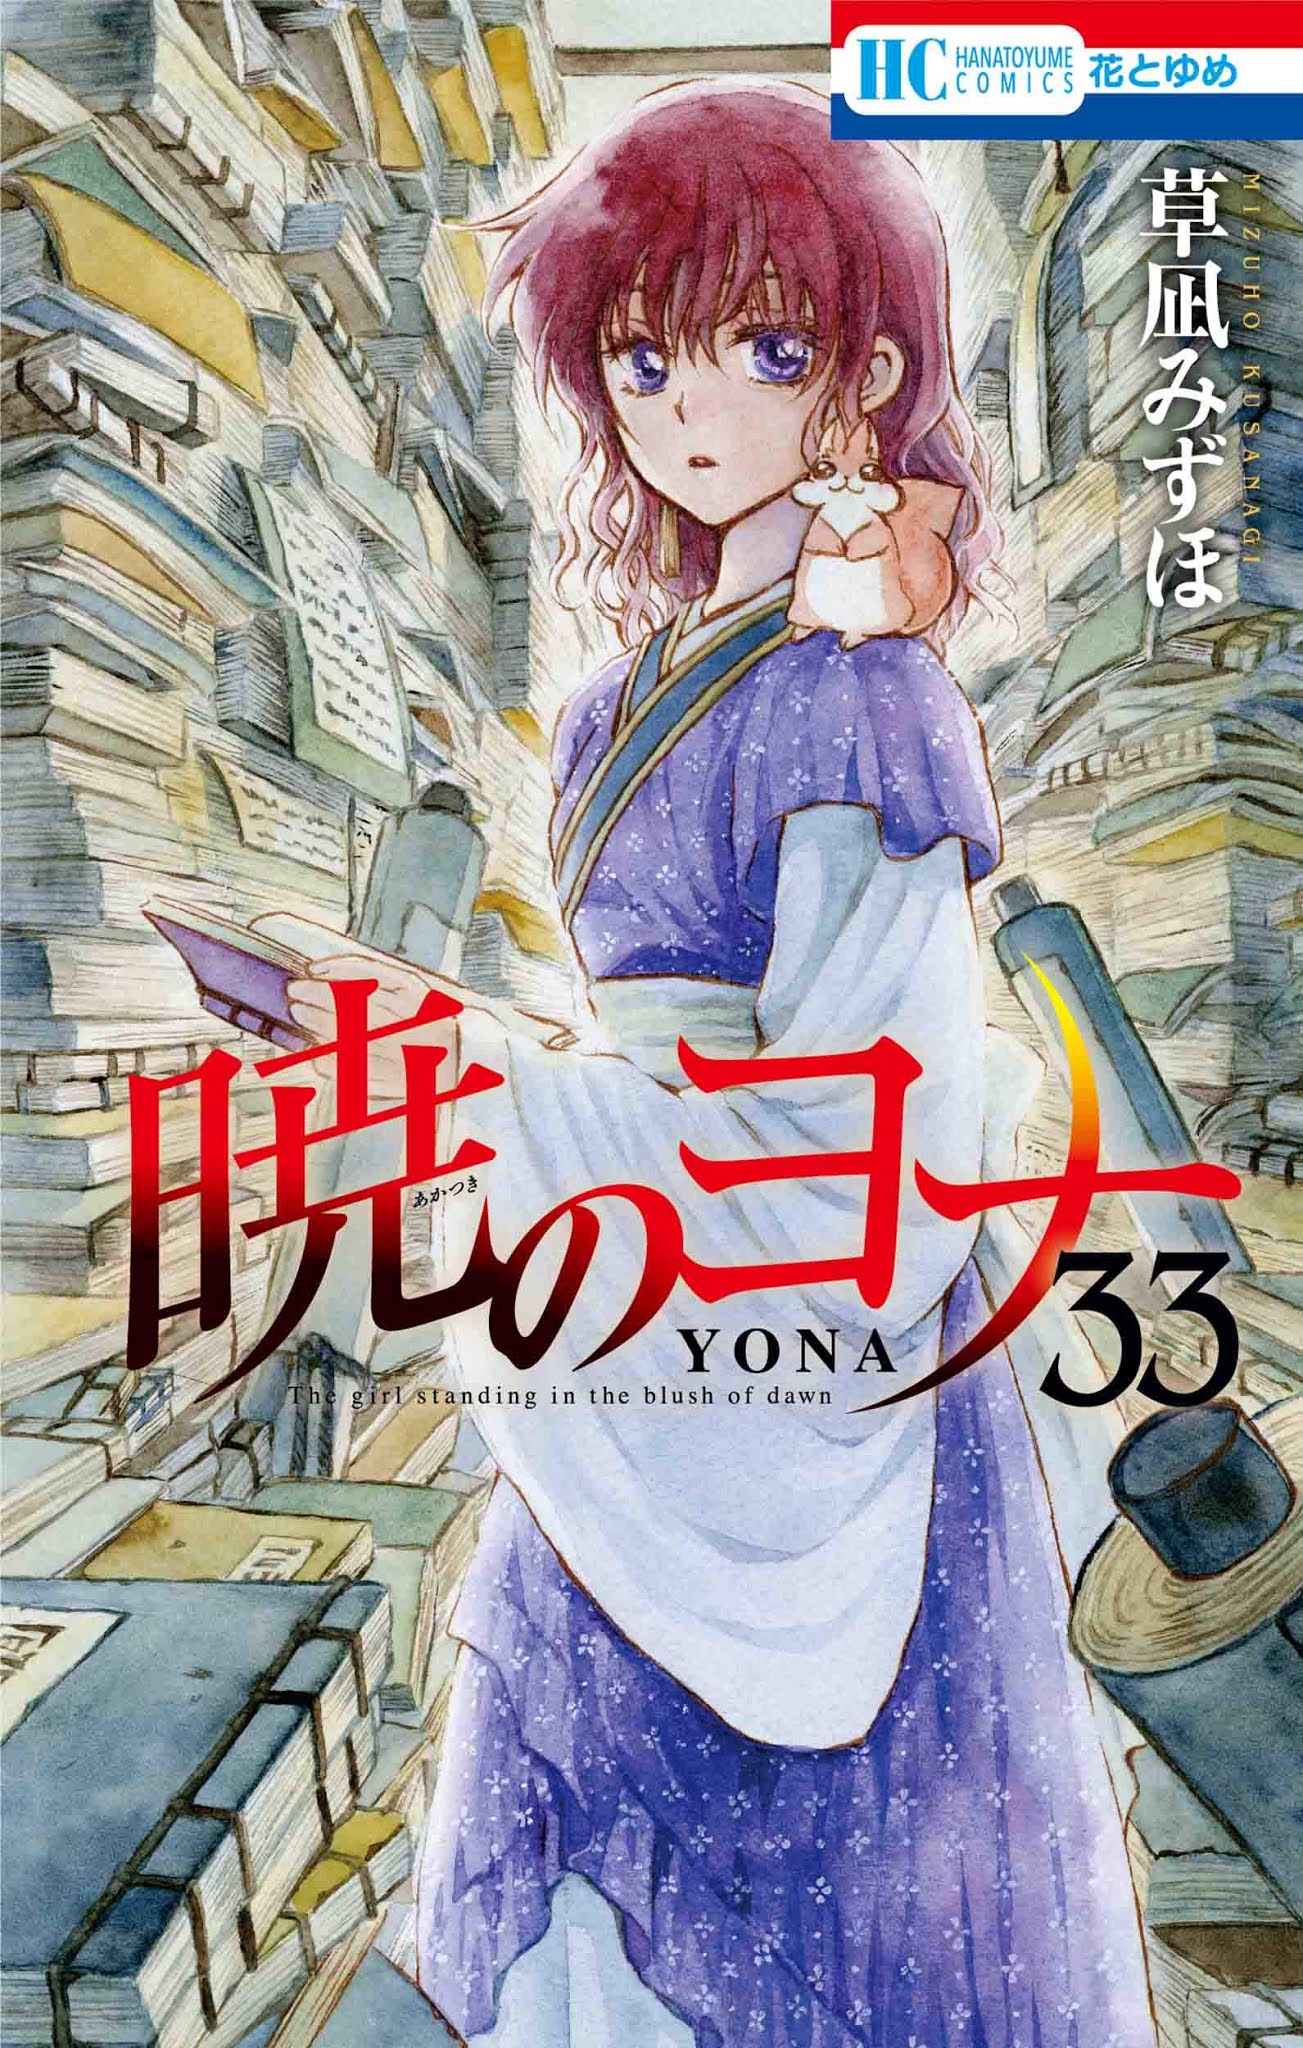 Yofukashi no Uta - Capítulo 56 - Ler mangá online em Português (PT-BR)